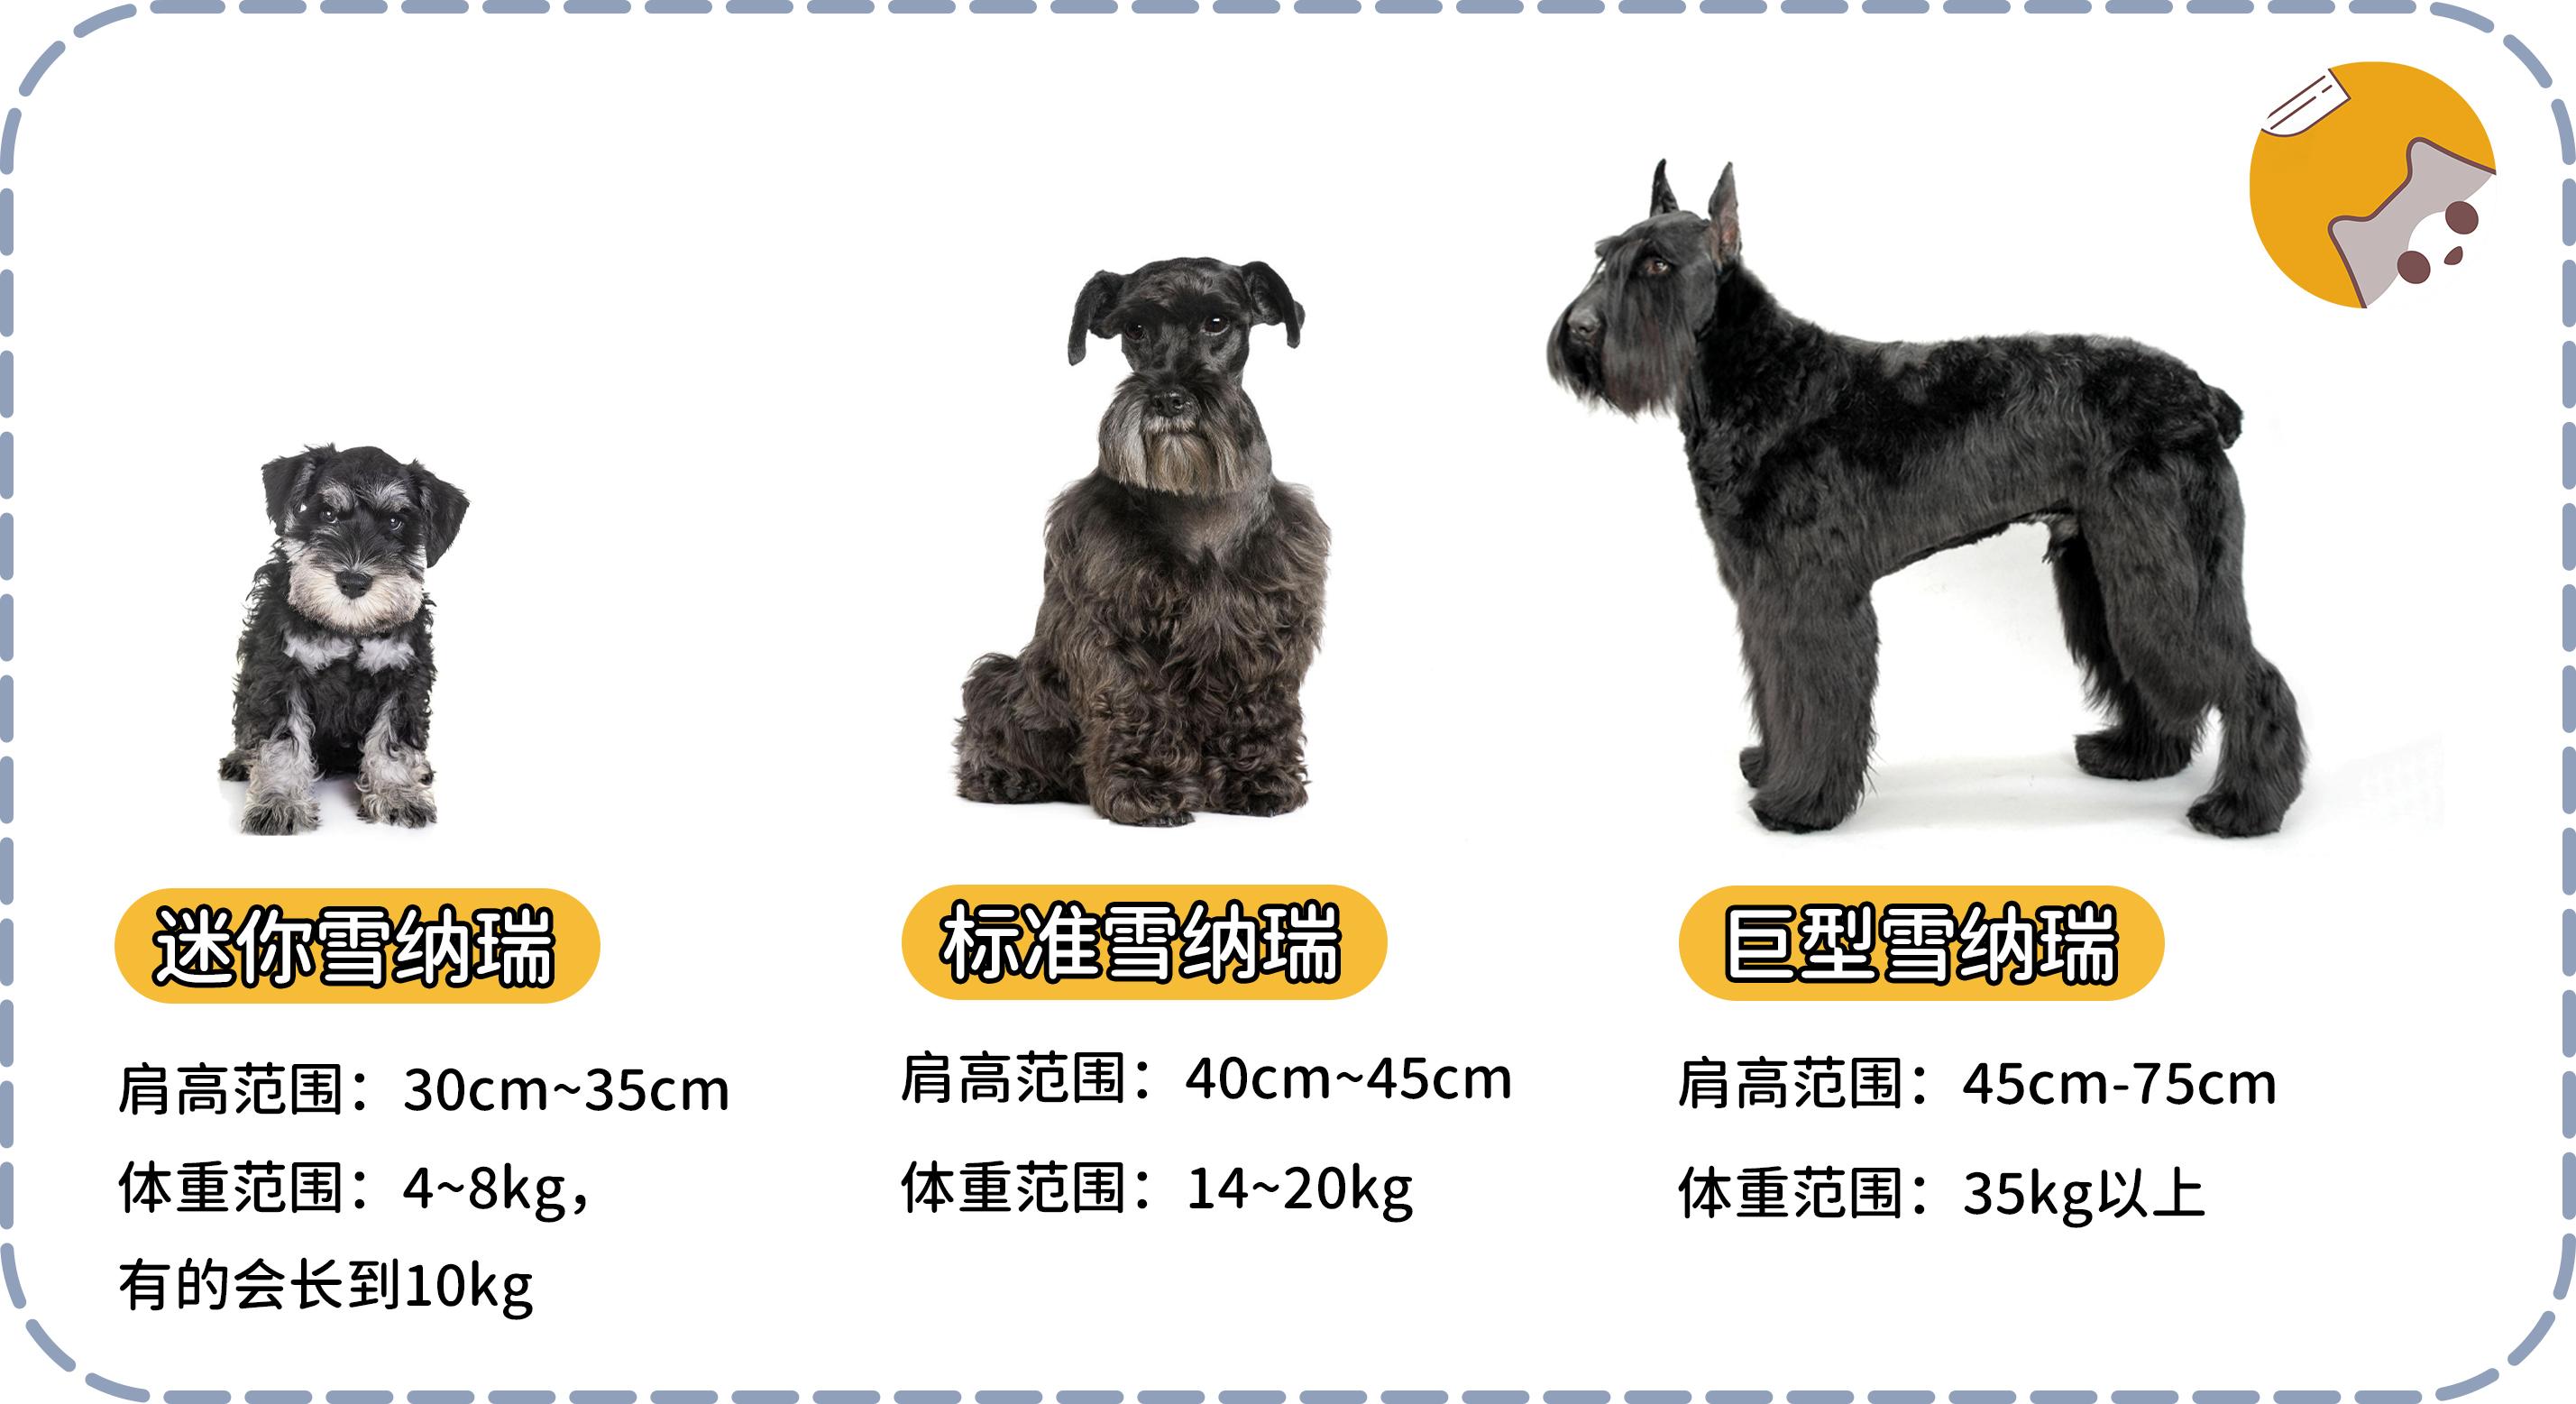 标准雪纳瑞犬的历史最为悠久,巨型瑞雪纳瑞犬的年代最近,迷你雪纳瑞犬